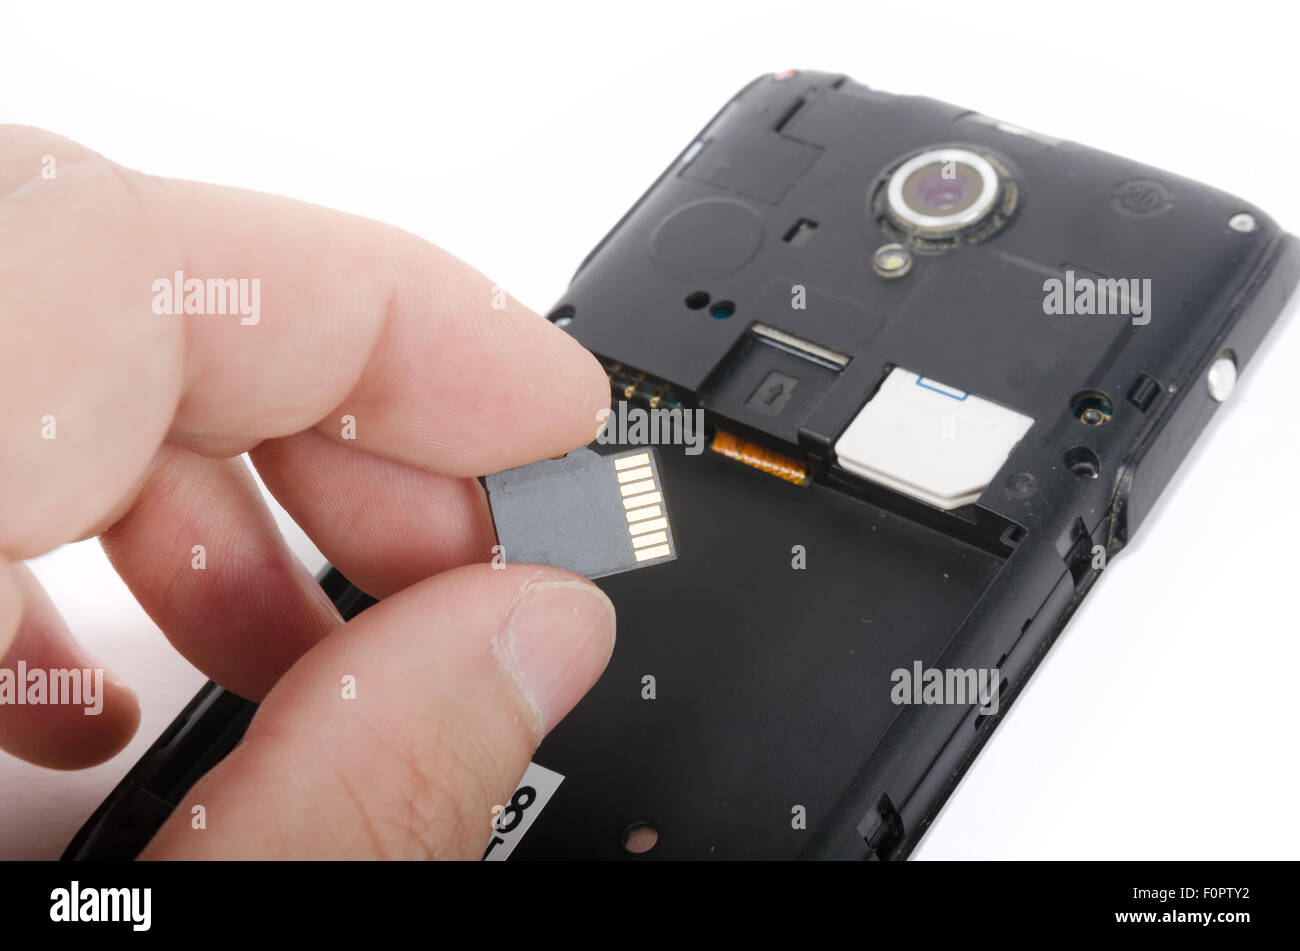 Mano umana inserendo la scheda Micro SD nel telefono cellulare (smartphone) Foto Stock